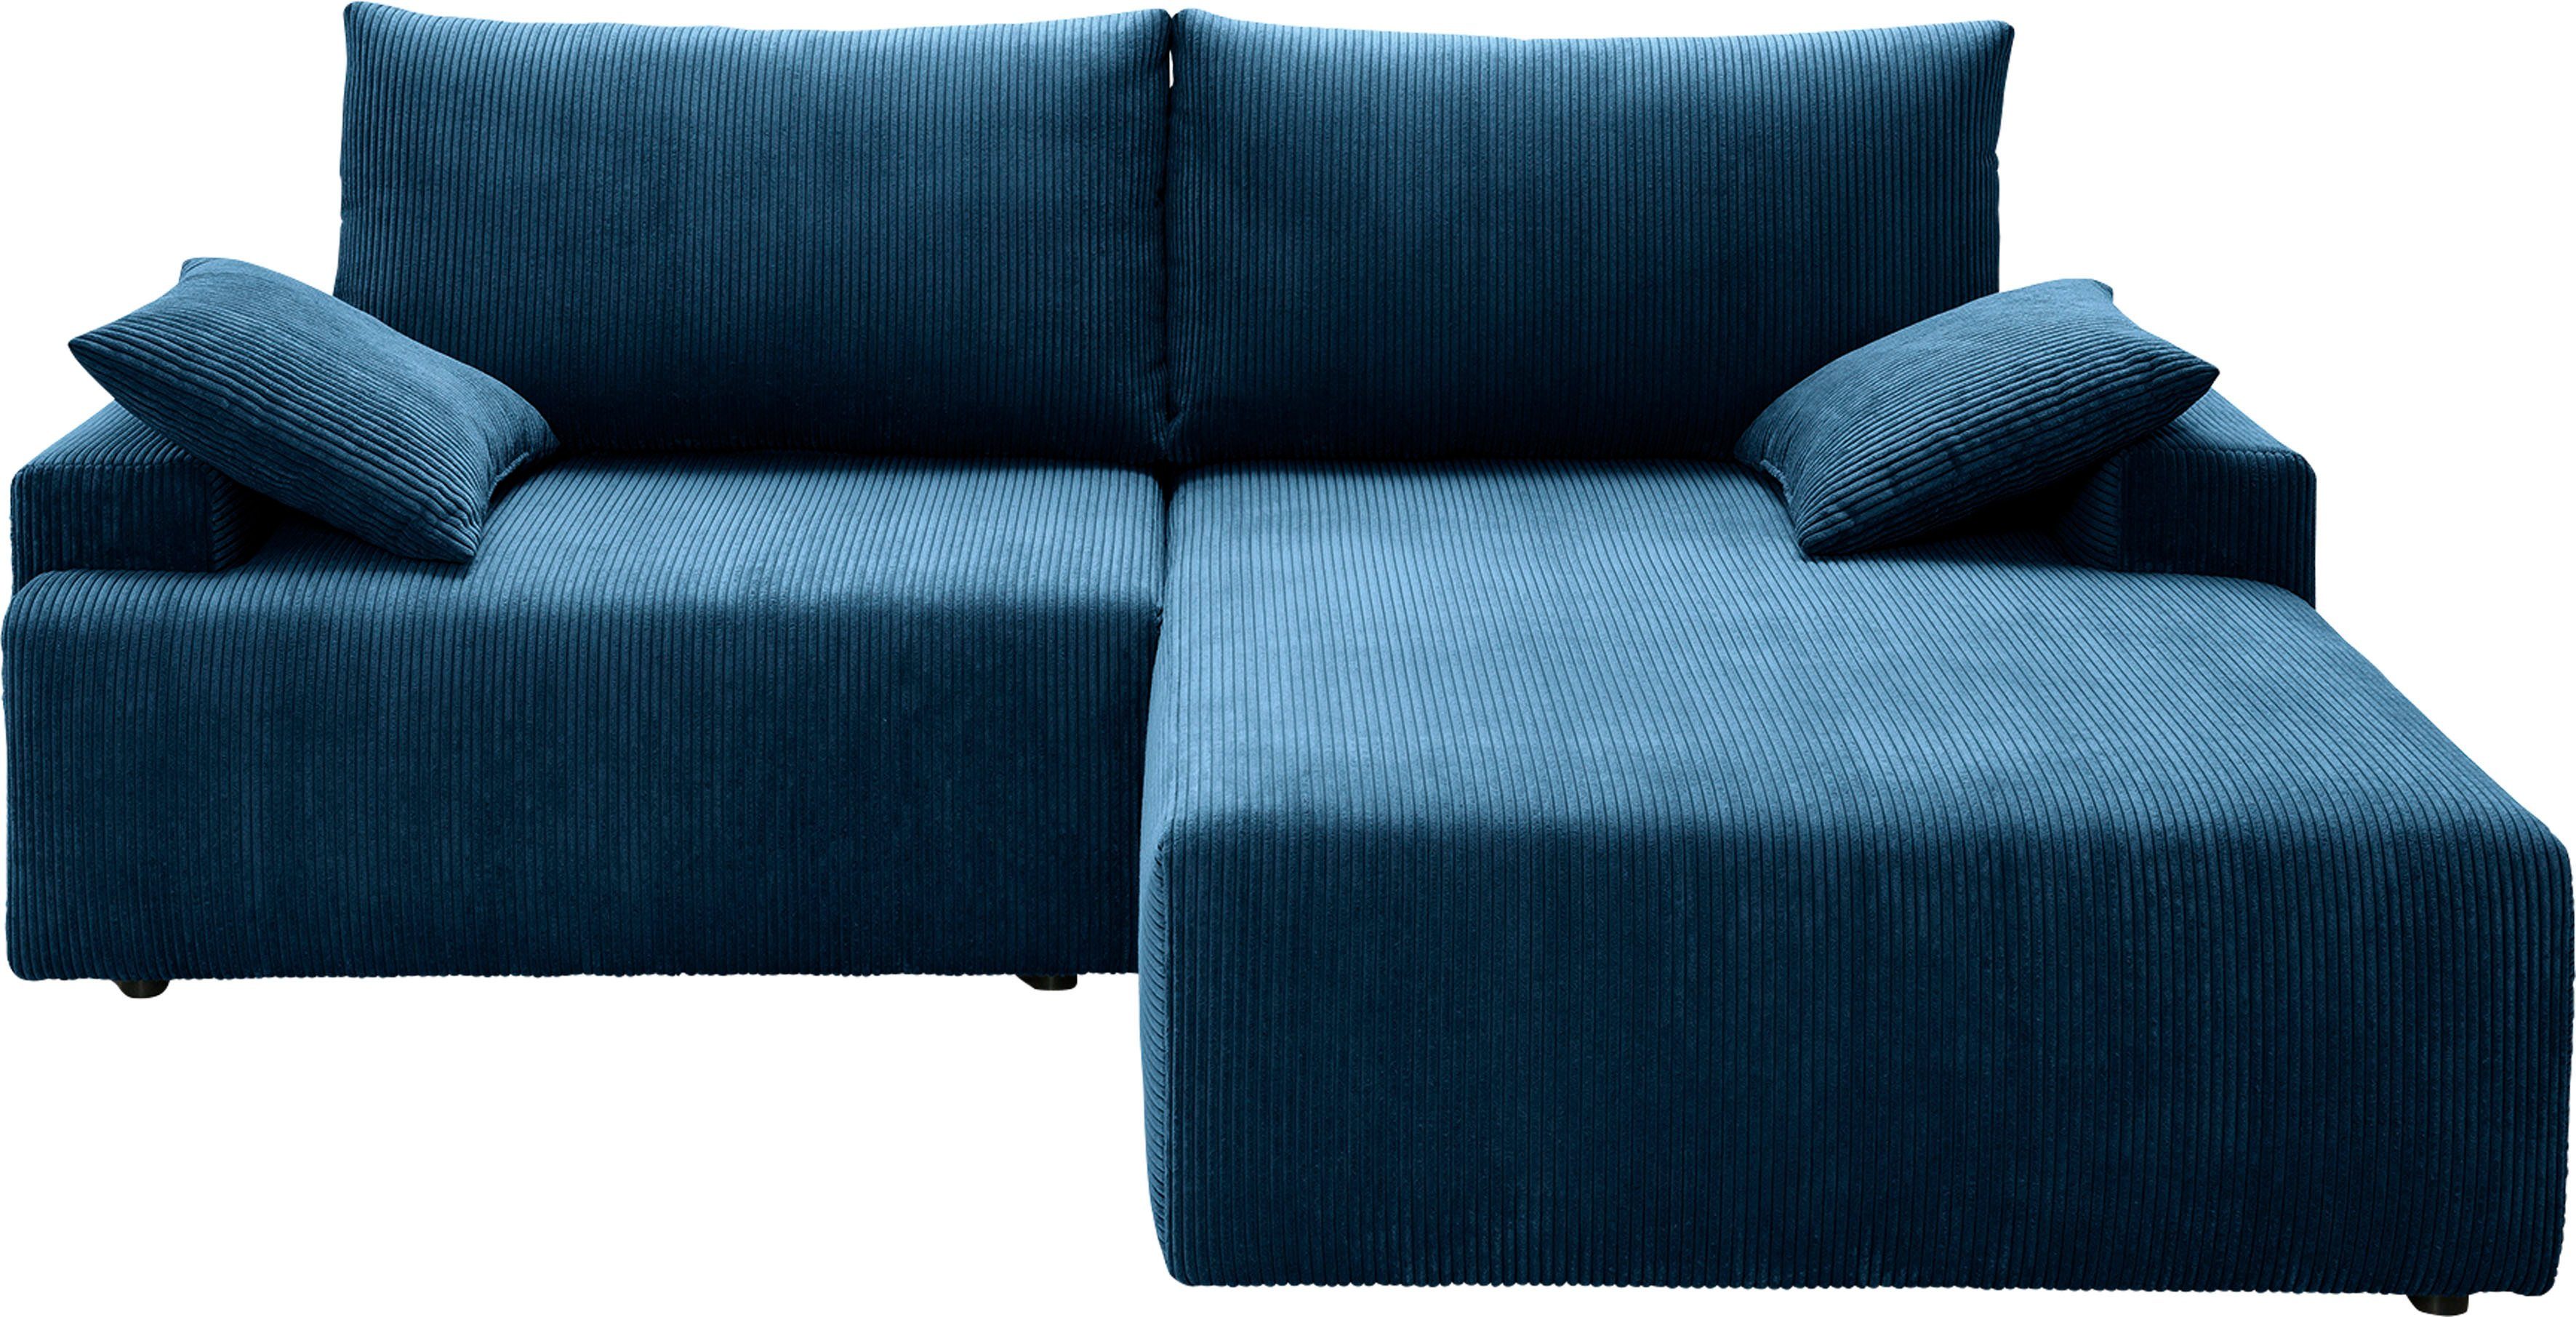 exxpo - sofa fashion Ecksofa Cord-Farben in navy und Orinoko, verschiedenen Bettfunktion Bettkasten inklusive